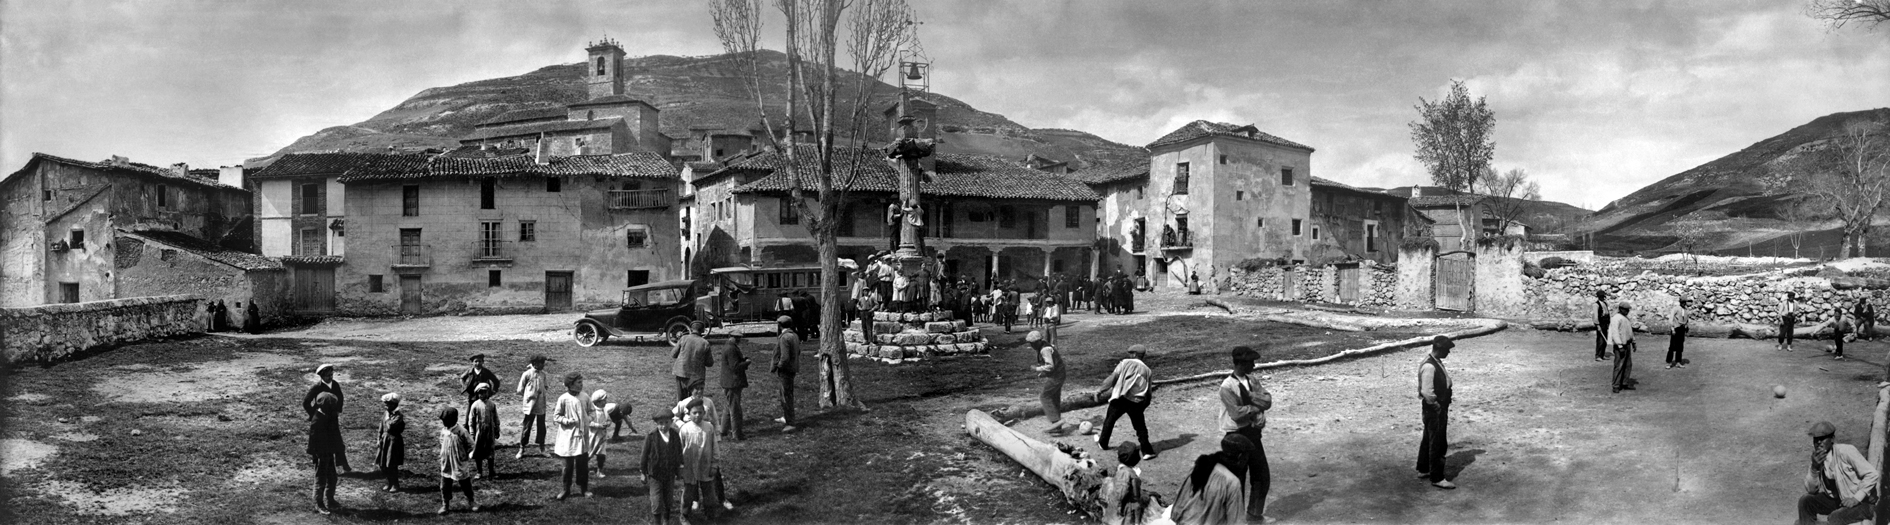 Lupiana (Guadalajara). Plaza Mayor. Octubre de 1921. Archivo Regueira. Filmoteca de Castilla y León. ©Derechos reservados.